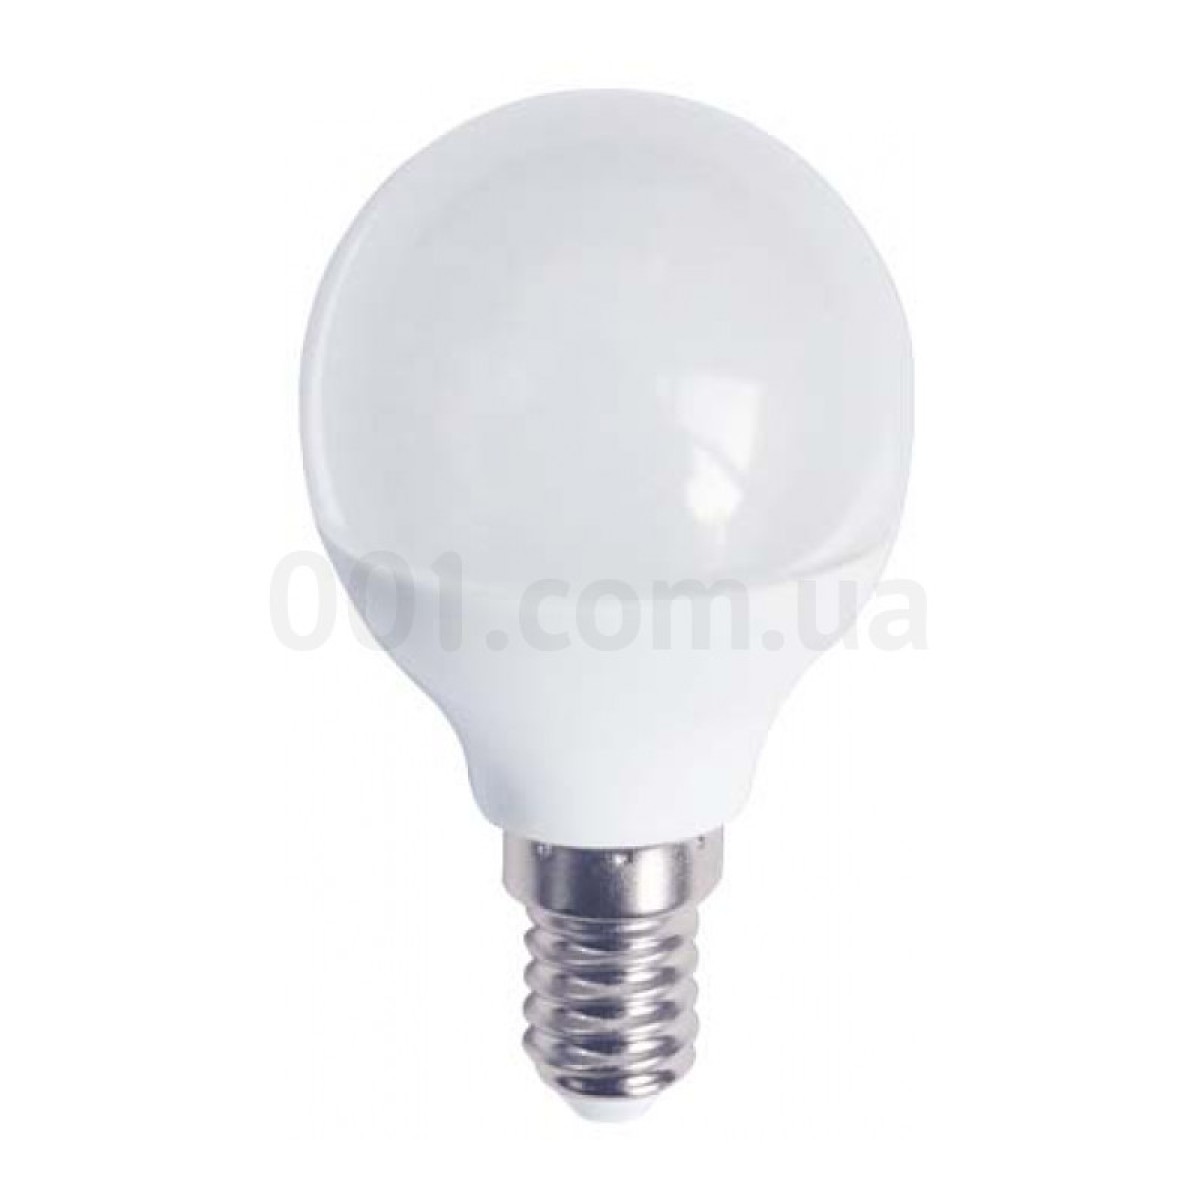 Світлодіодна лампа LB-745 P45 (куля) 6Вт 2700K E14, Feron 256_256.jpg